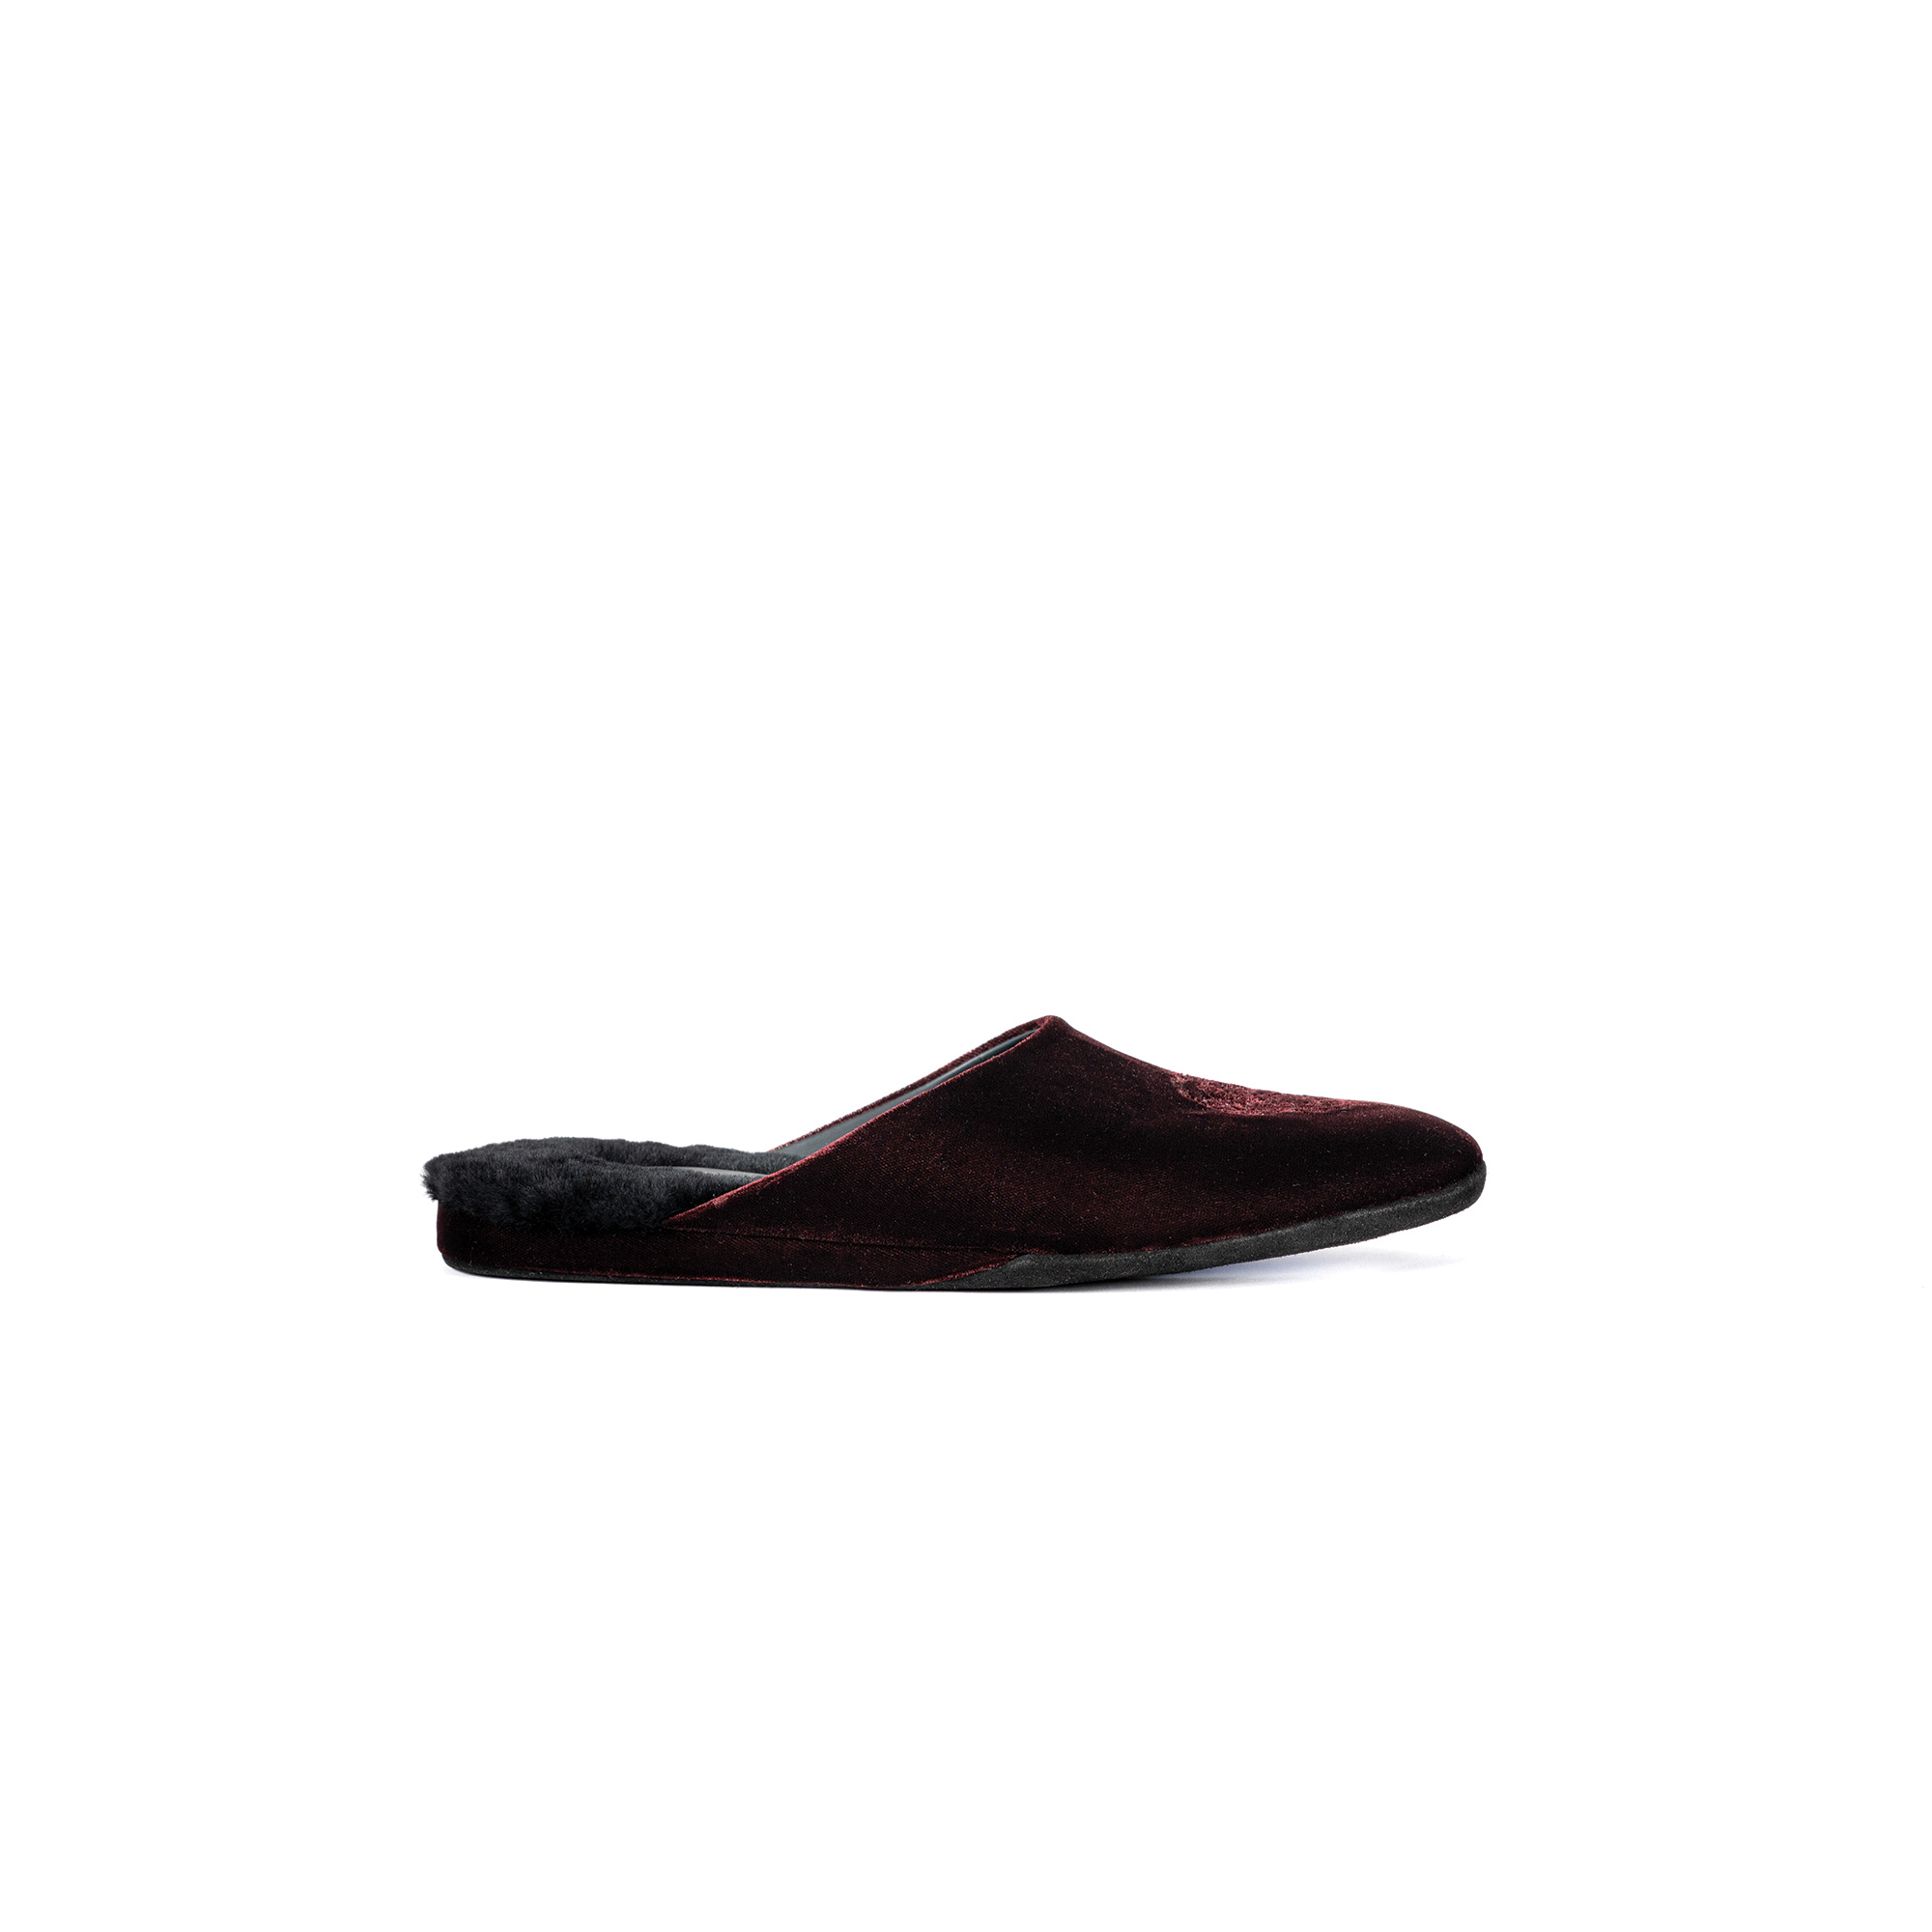 Pantofola interno sera in velluto bruciato - Farfalla italian slippers